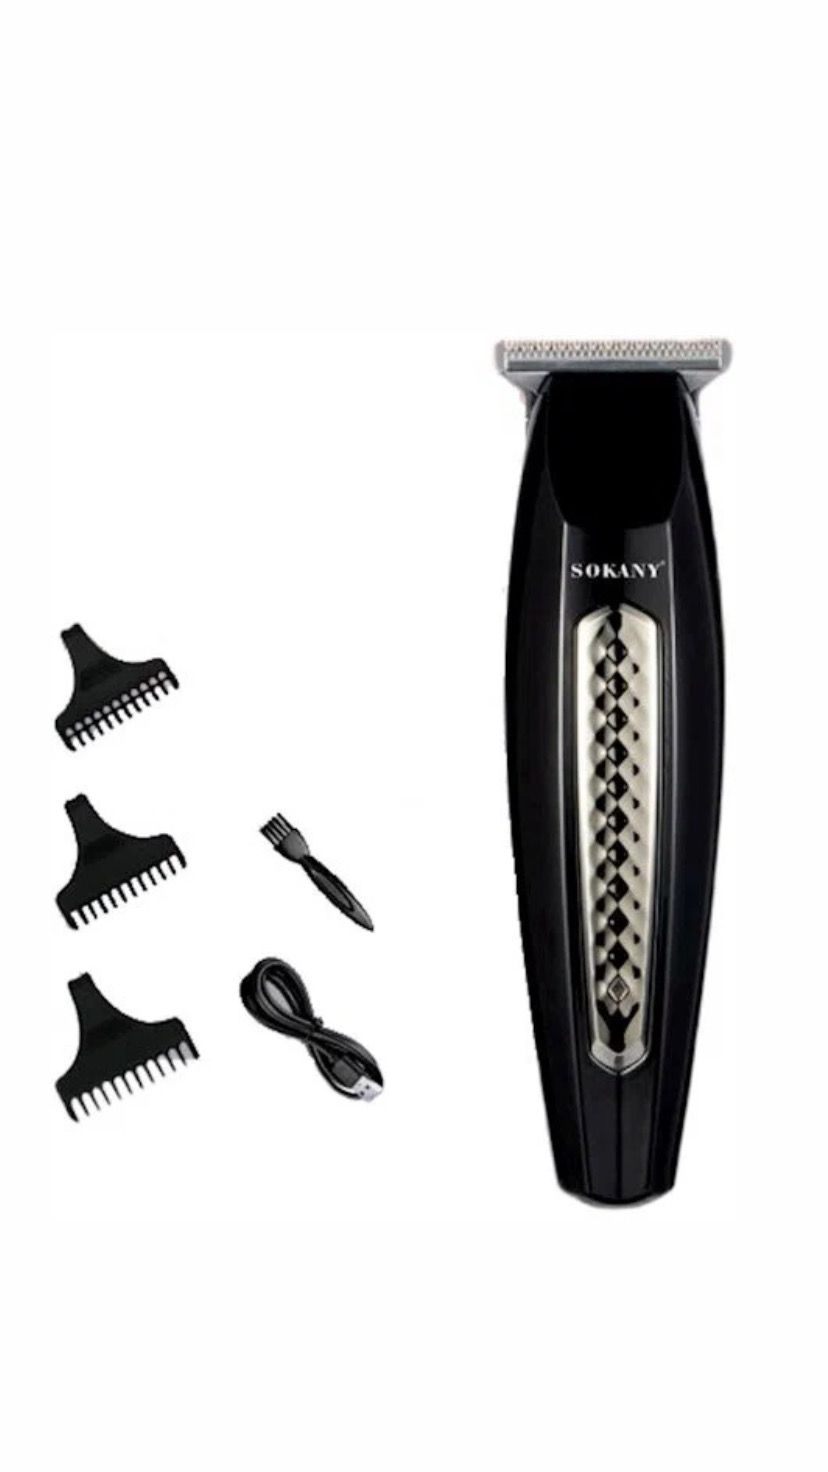 Триммер Sokany z.989 черный профессиональный триммер для волос для мужчин аккумуляторная электрическая мощная машина для стрижки резьба инструмент для волос